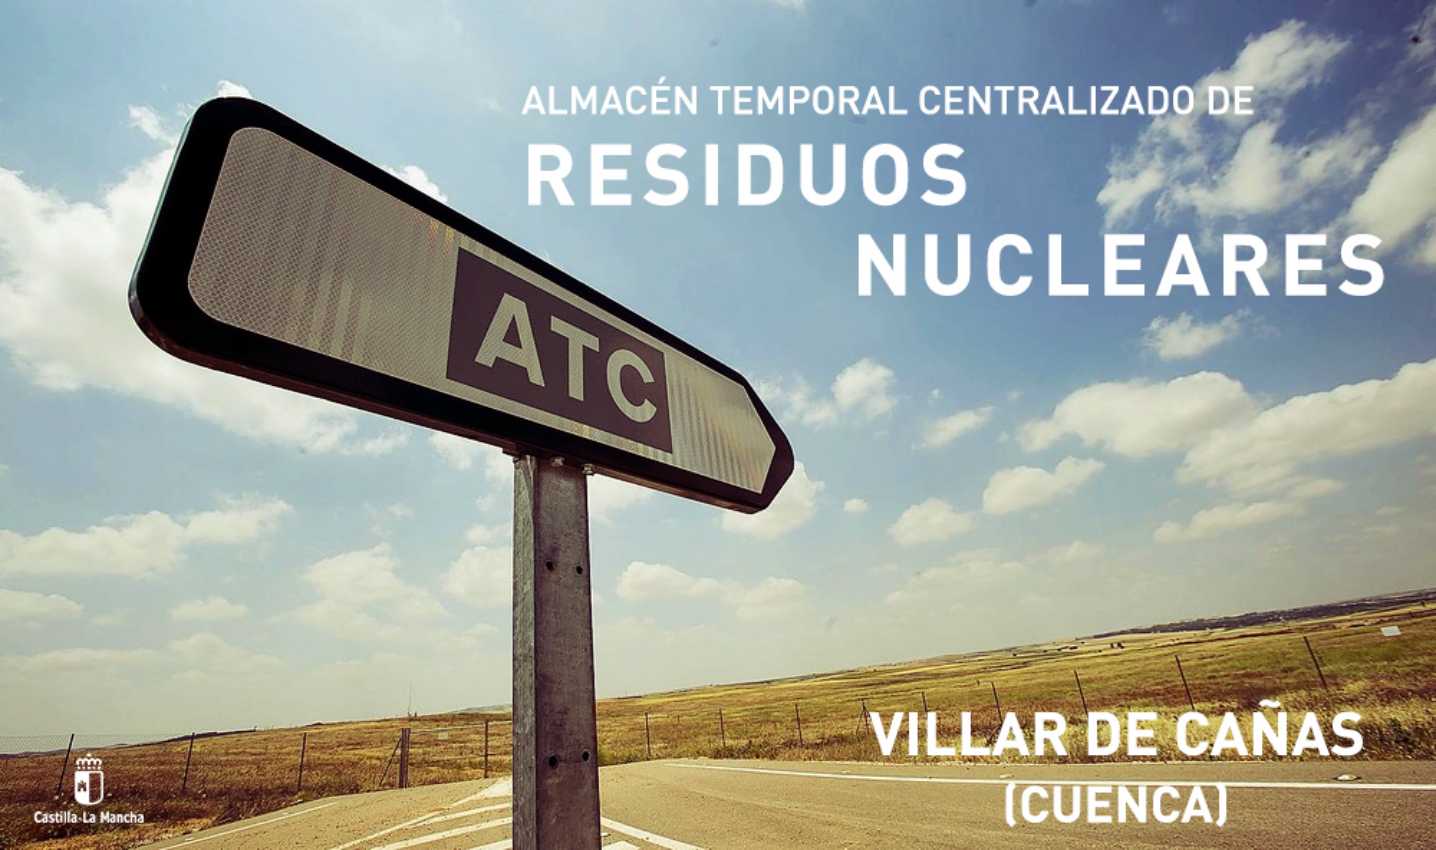 El cementerio nuclear en Villar de Cañas, descartado, atc